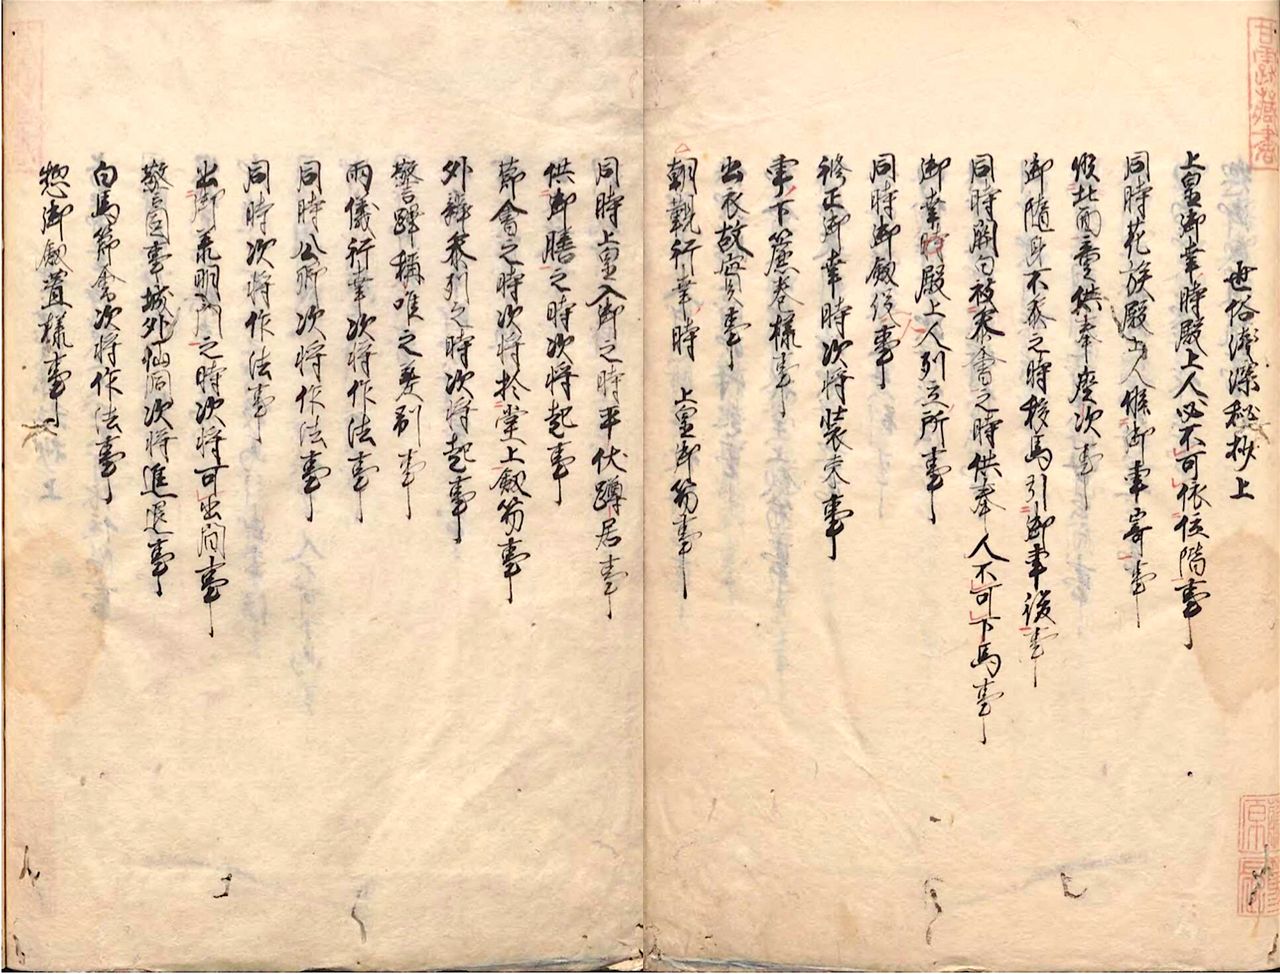 Список «Сэдзоку сэнсин хисё», где перечислены правила юсоку кодзицу, которые следовало выполнять (собрание Национального архива Японии)